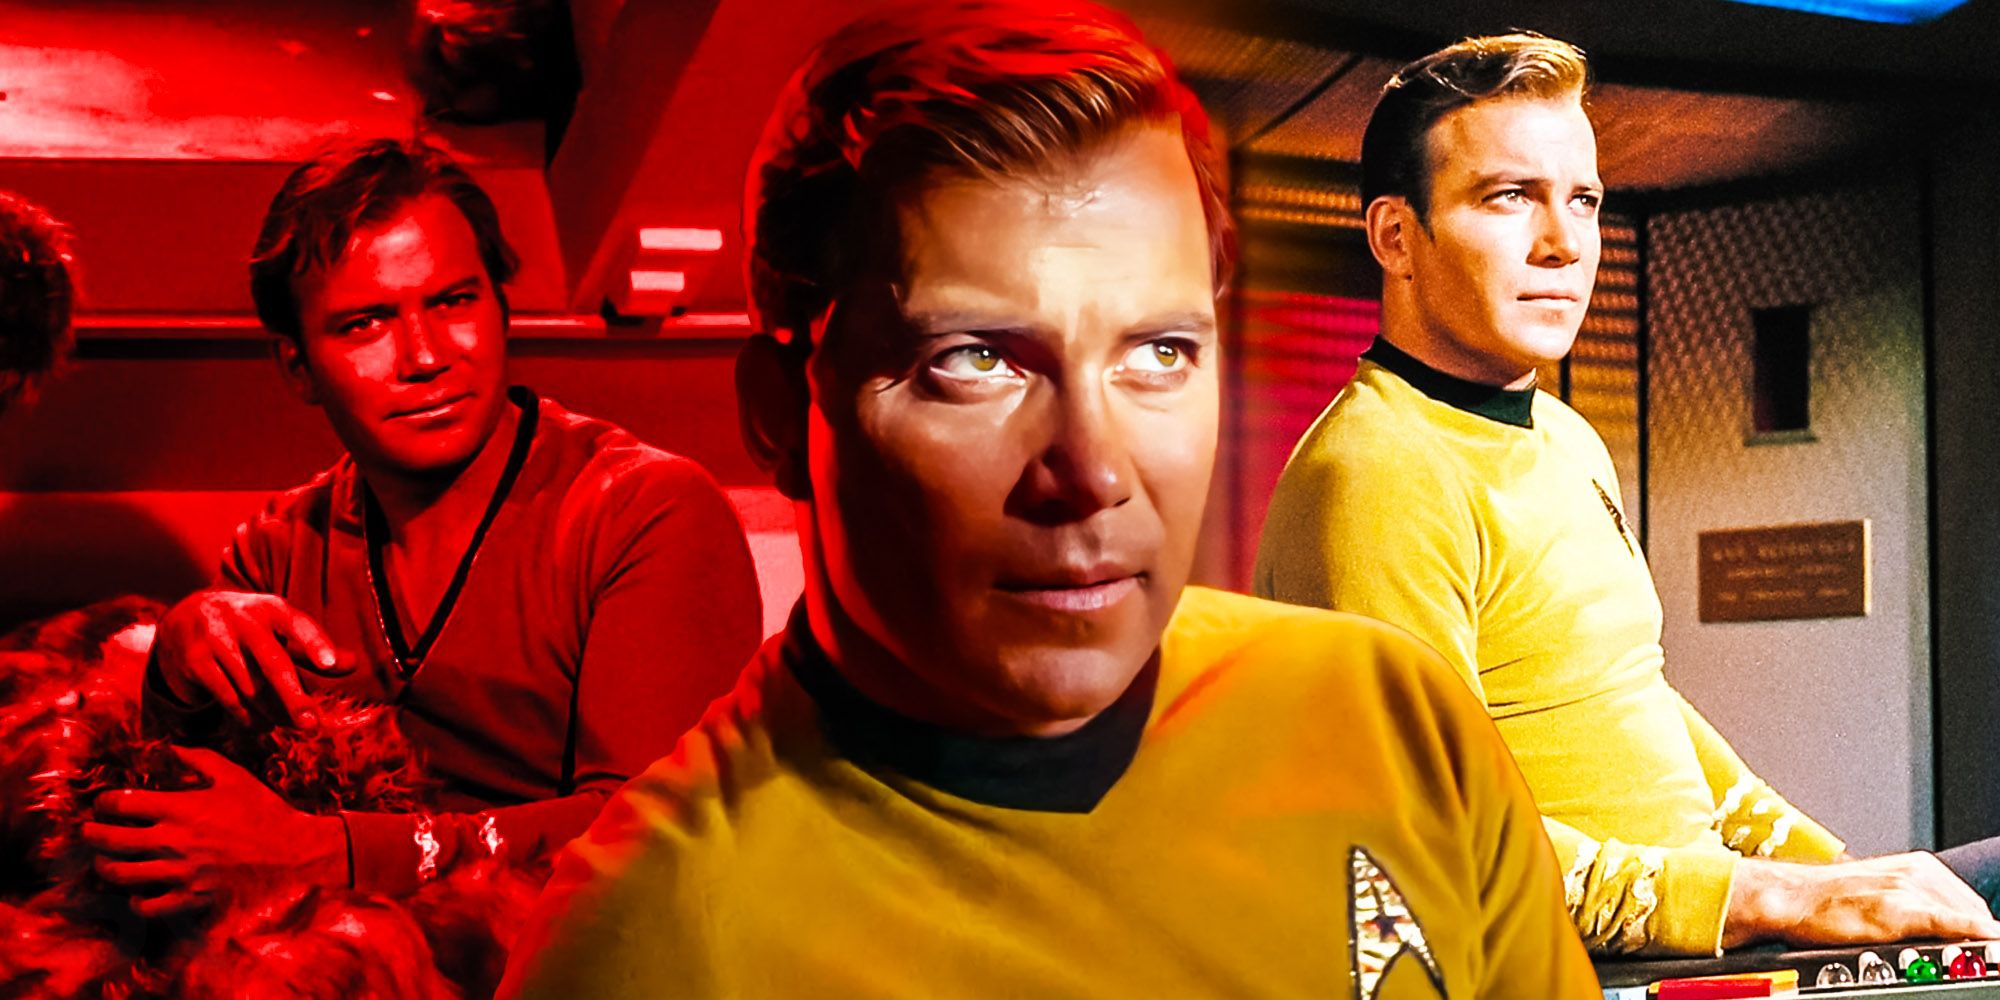 William Shatner abierto a la IA para recrear al Capitán Kirk de Star Trek "Si estoy muerto"